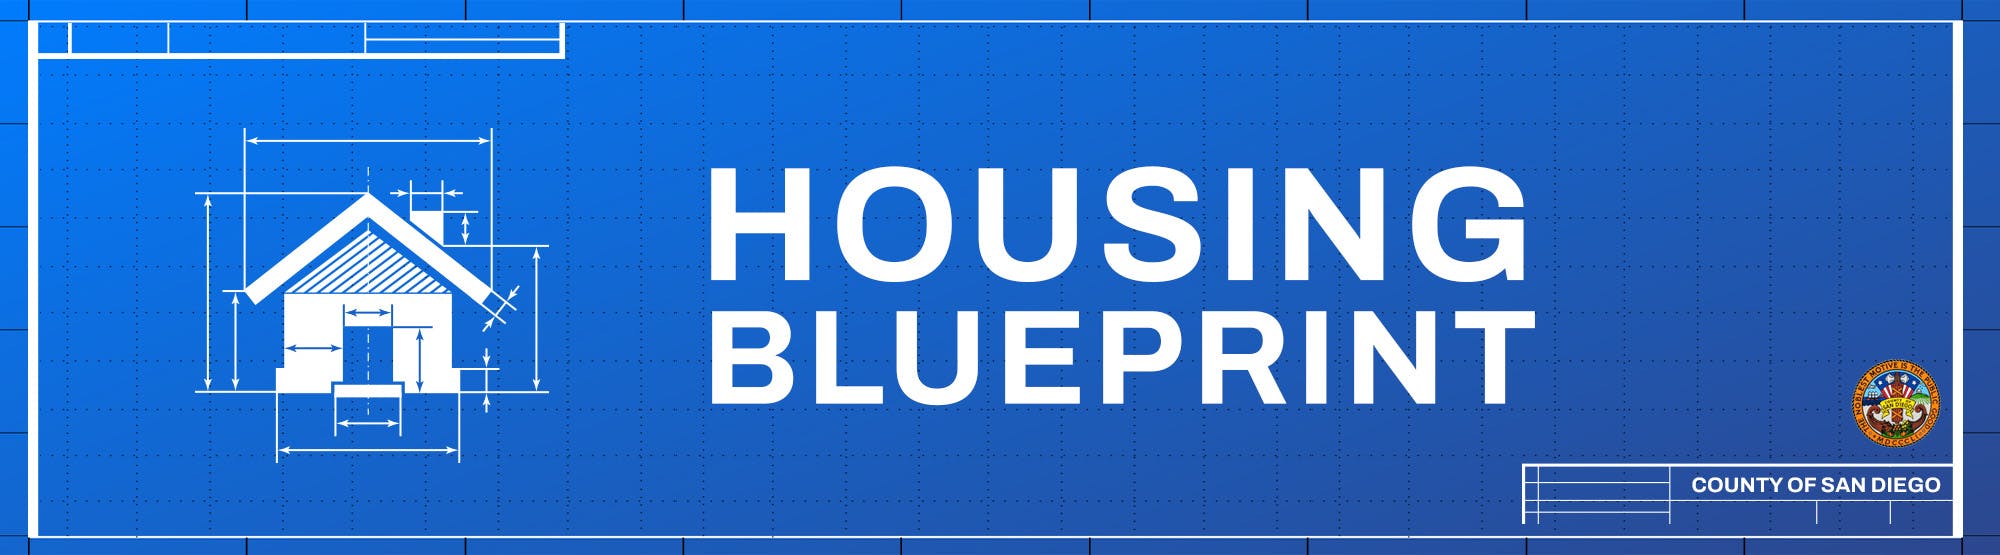 Housing Blueprint